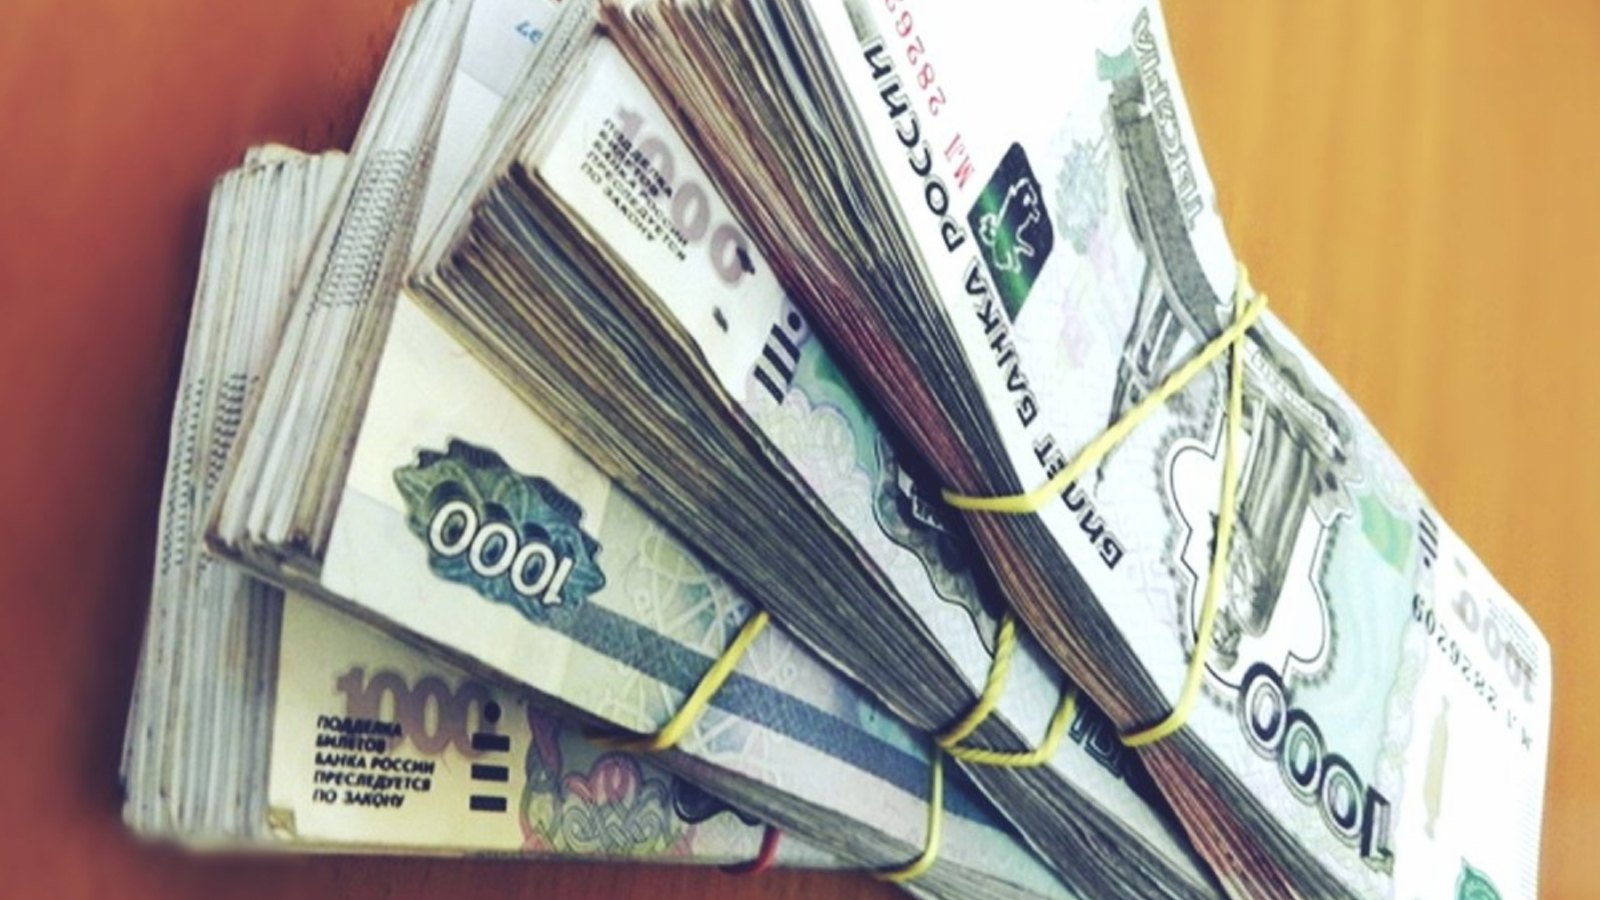 Пачки денег по 1000 рублей